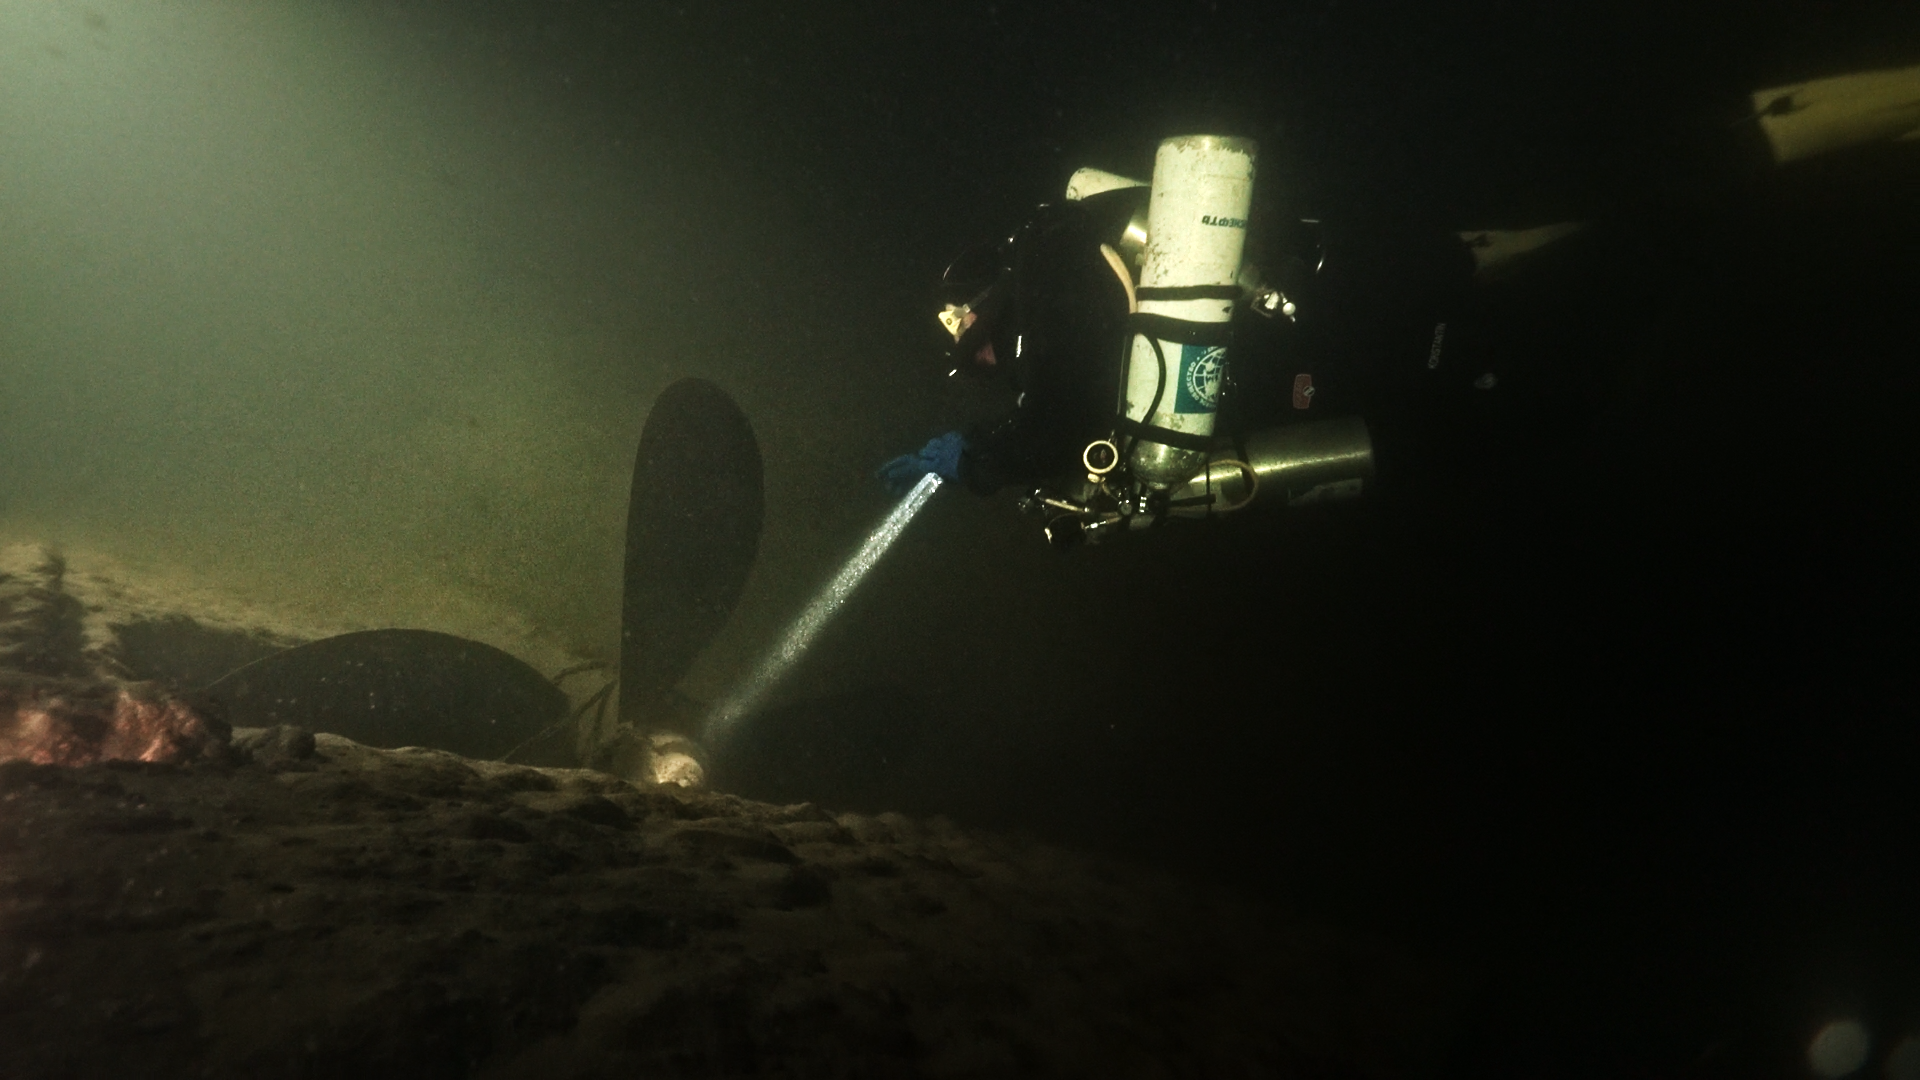 Дайверы обследуют винт плавбатареи West. Фото предоставлено Разведывательно-водолазной командой 